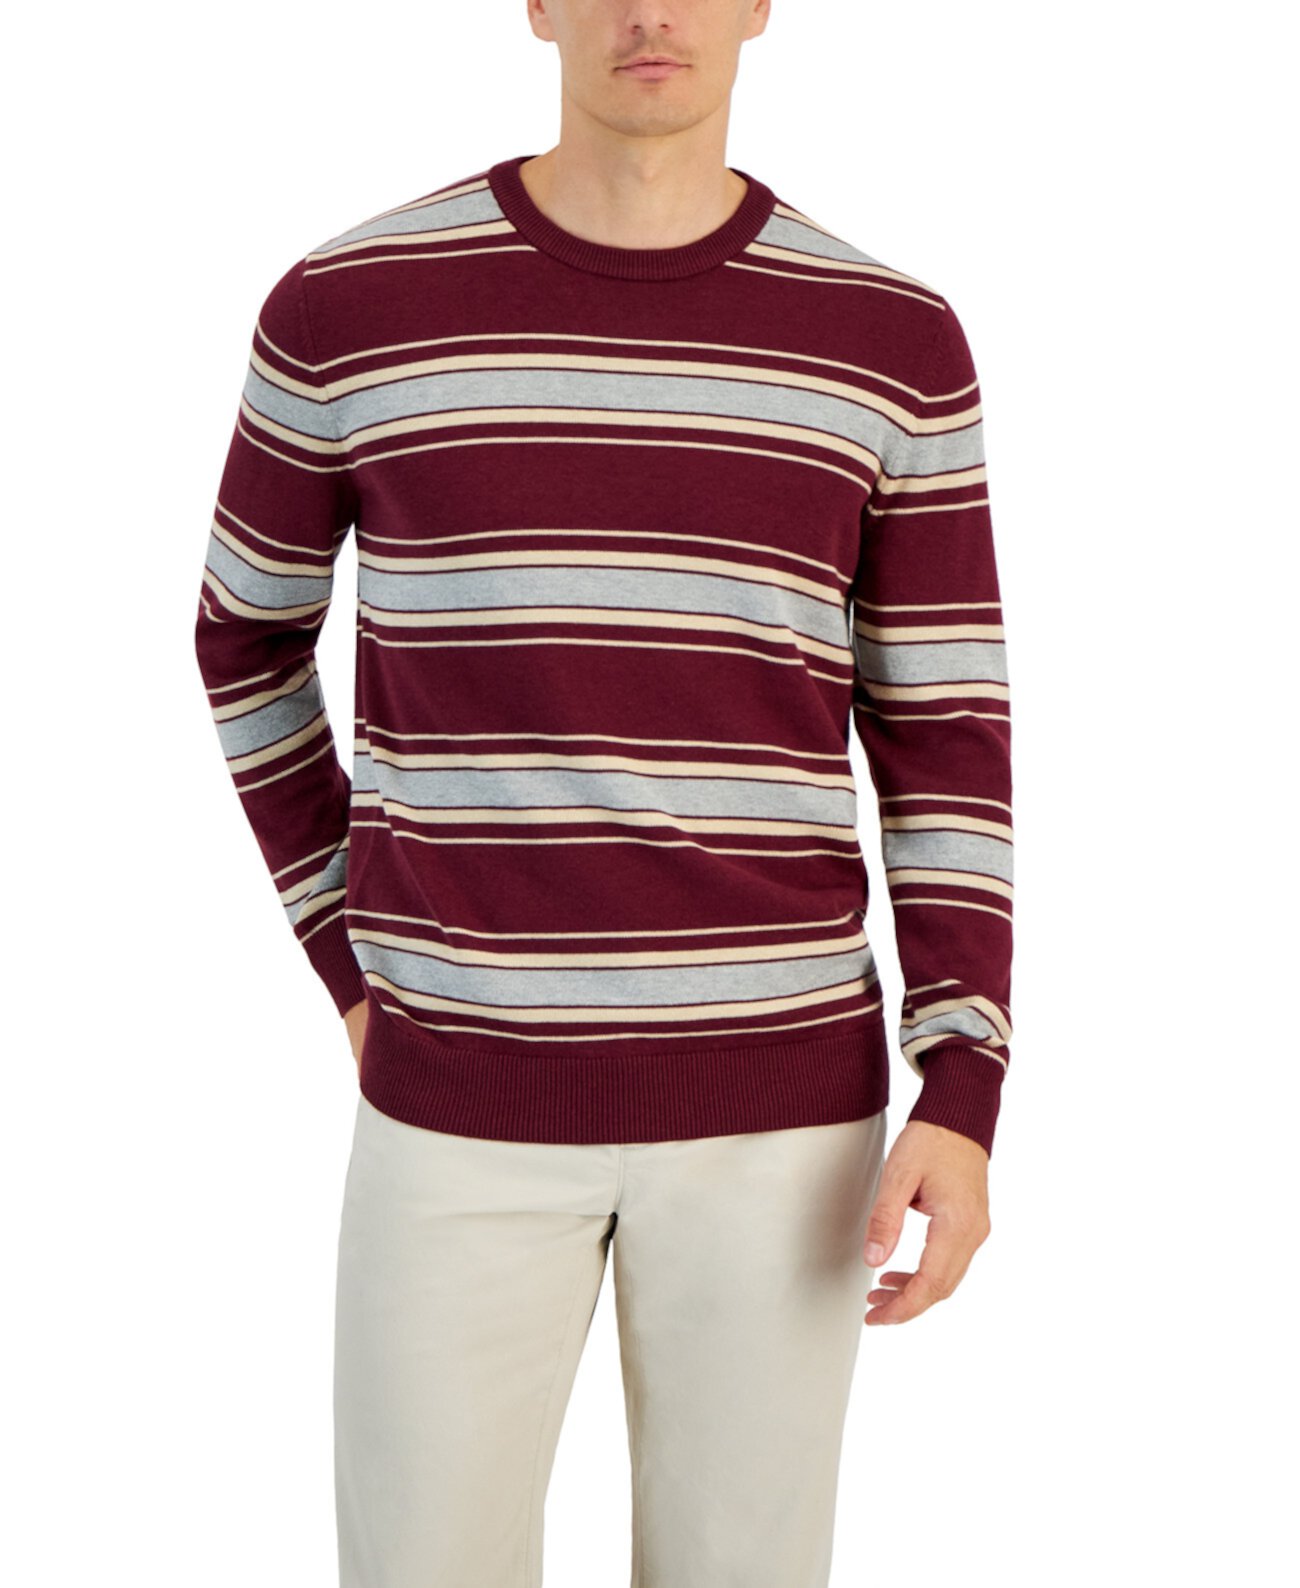 Мужской свитер с круглым вырезом в приподнятую полоску и длинными рукавами, созданный для Macy's Club Room